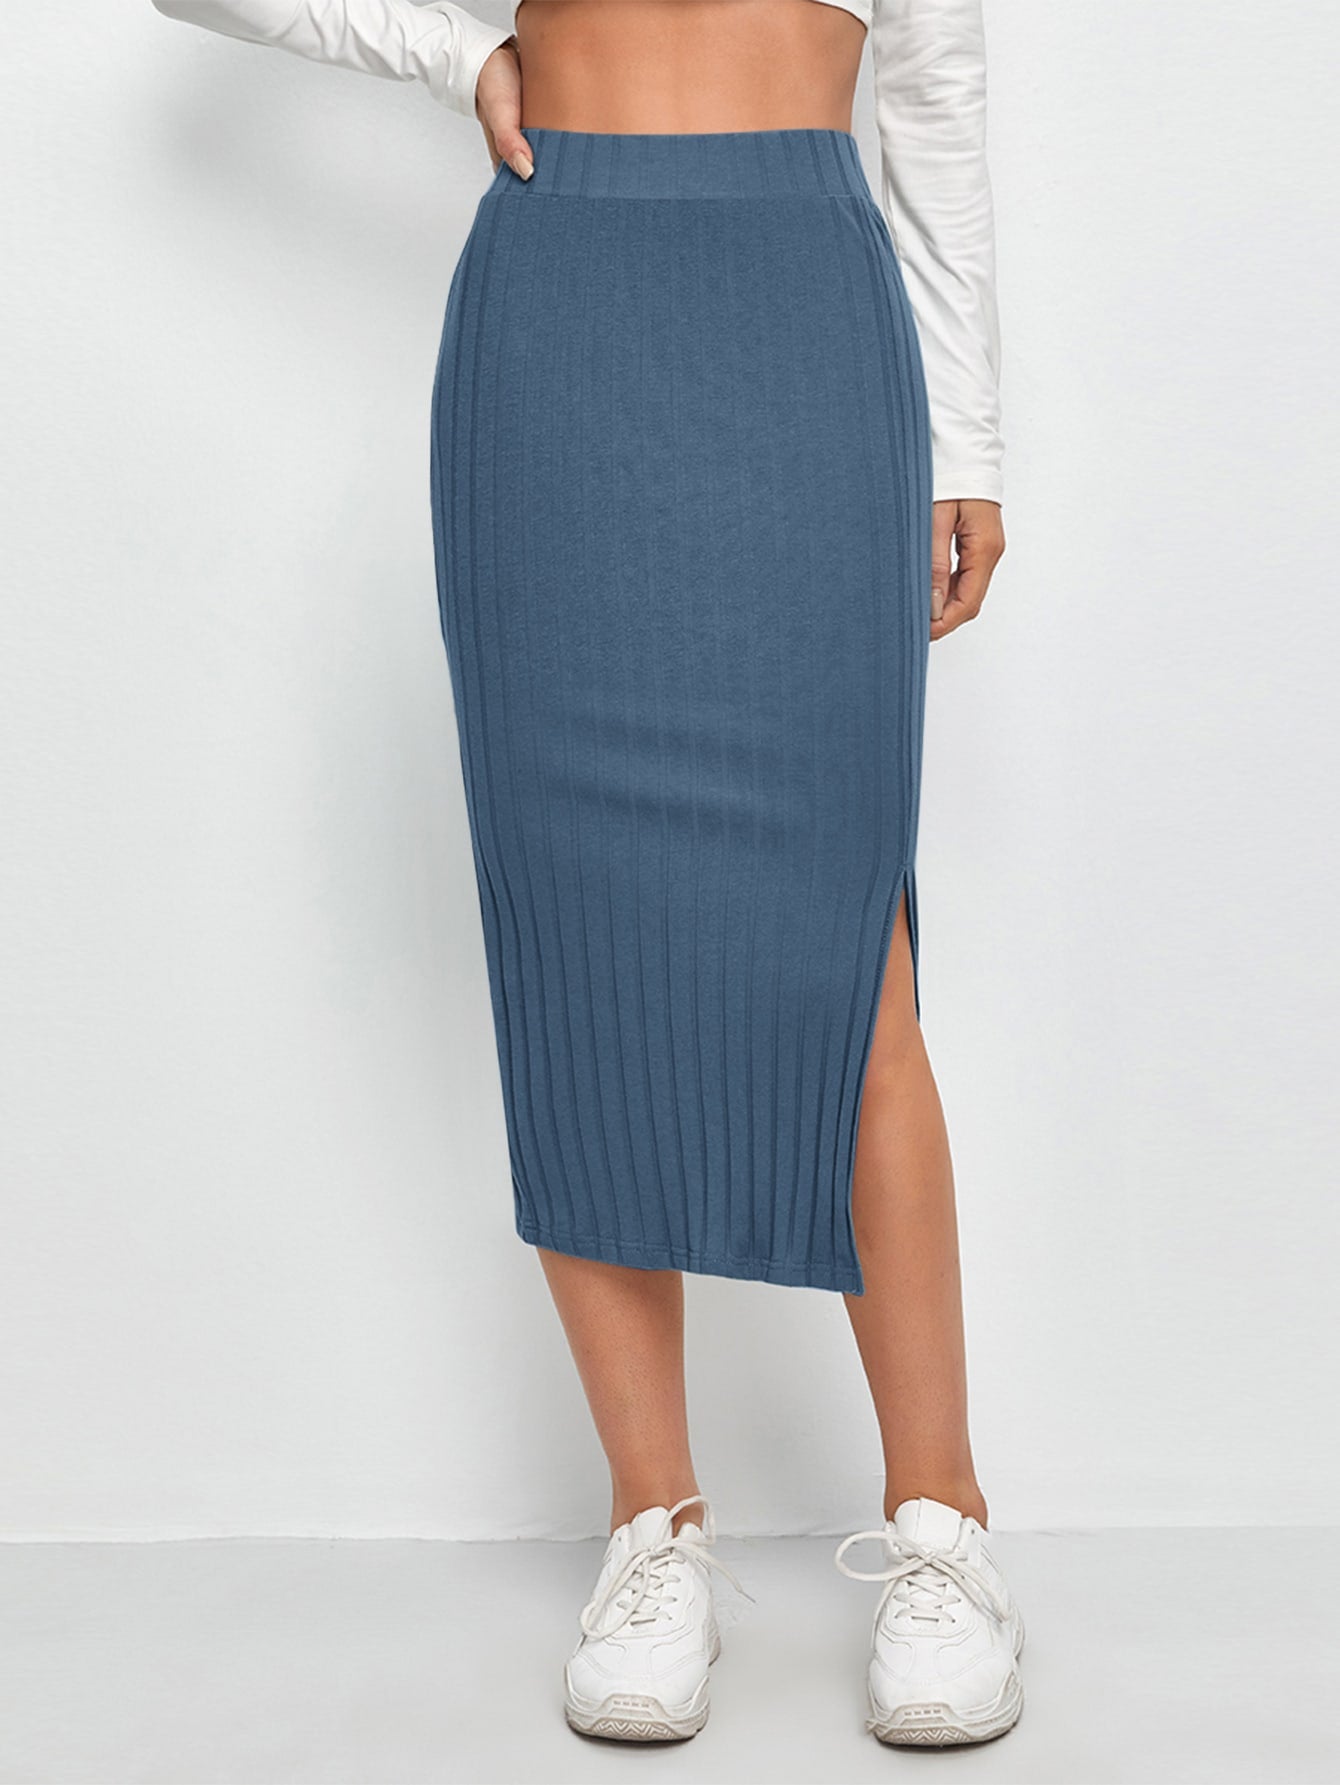 EZwear Slit Hem Rib-knit Pencil Skirt